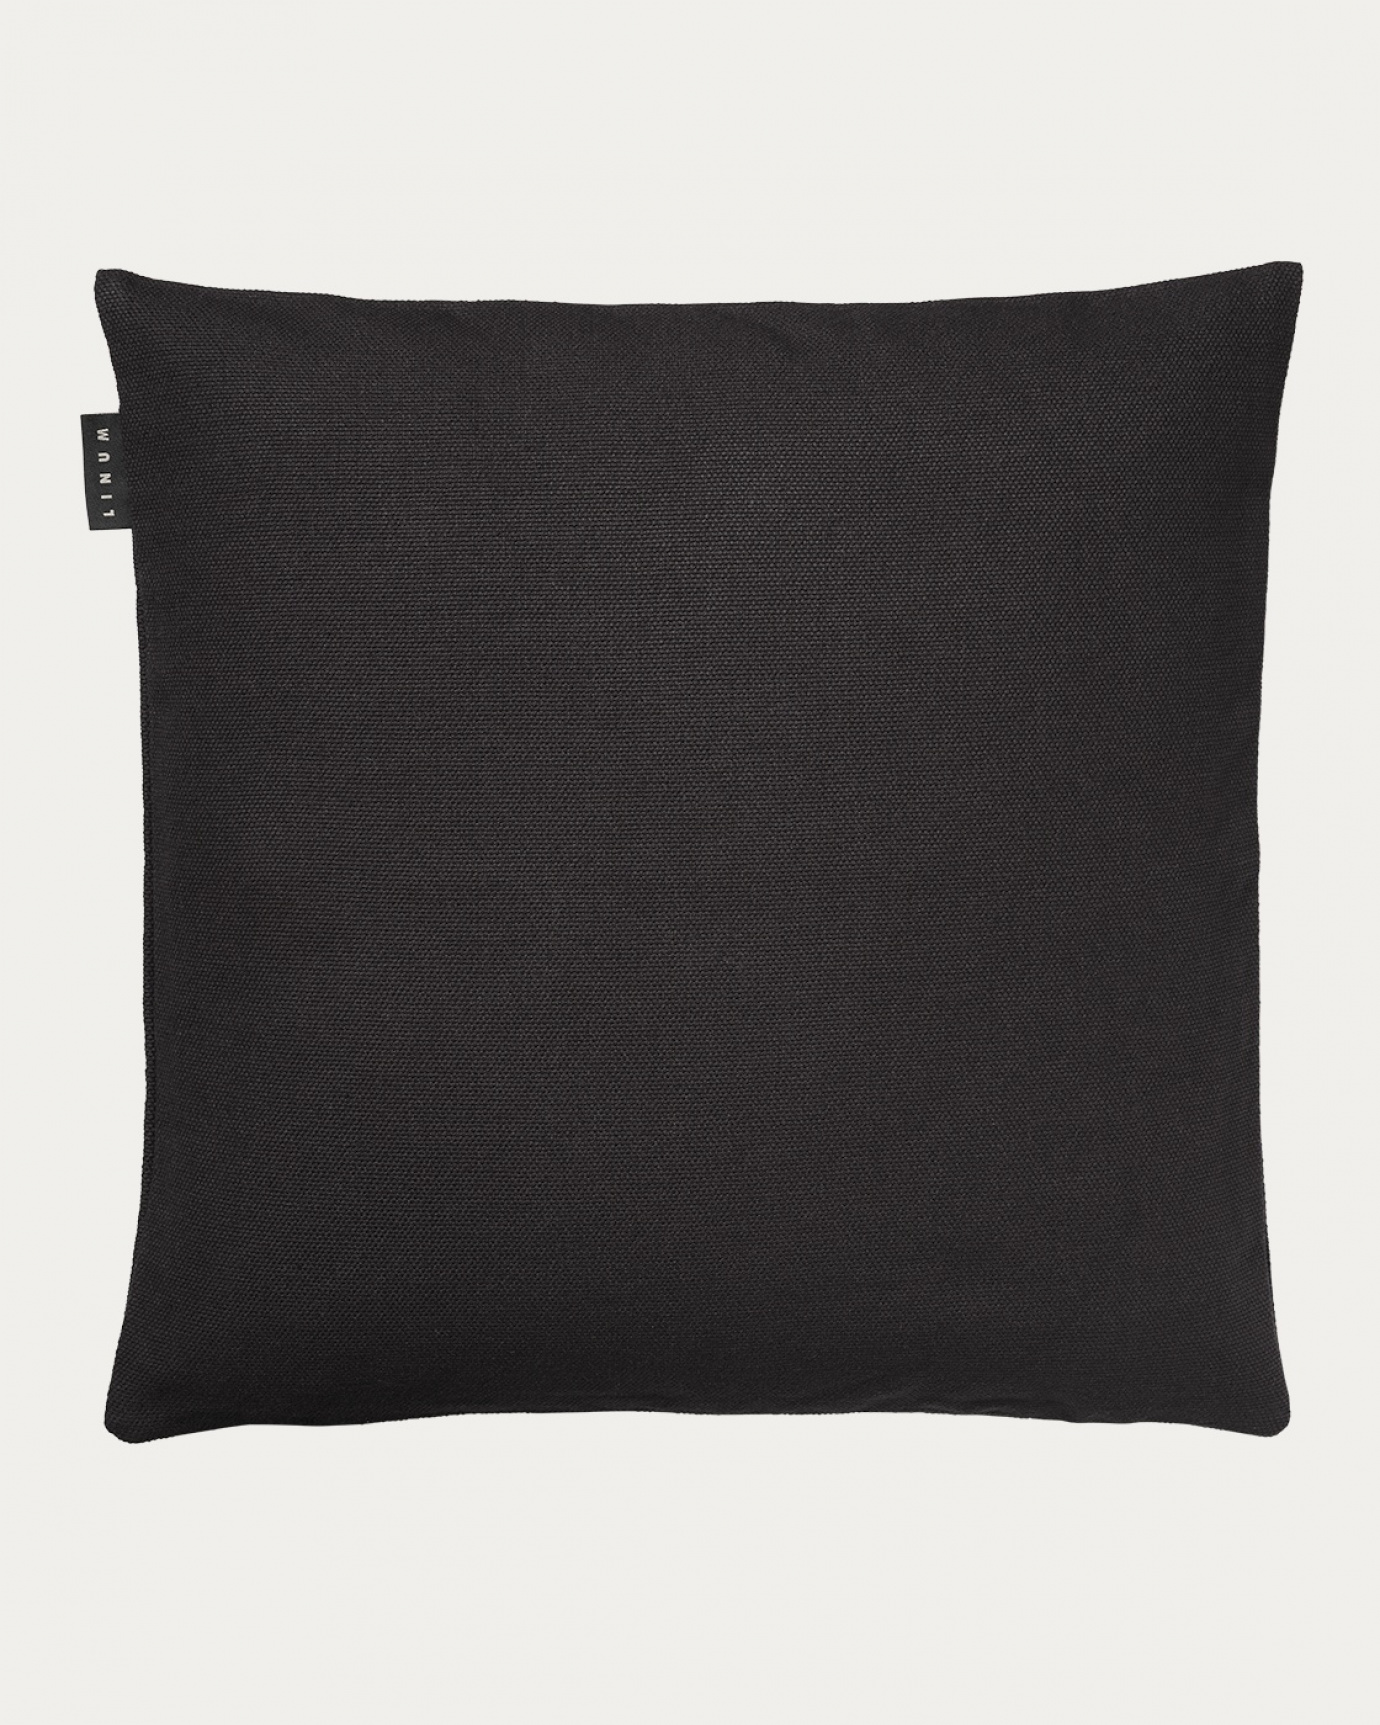 Image du produit housse de coussin PEPPER noir melange en coton doux de LINUM DESIGN. Facile à laver et durable pendant des générations. Taille 60 x 60 cm.